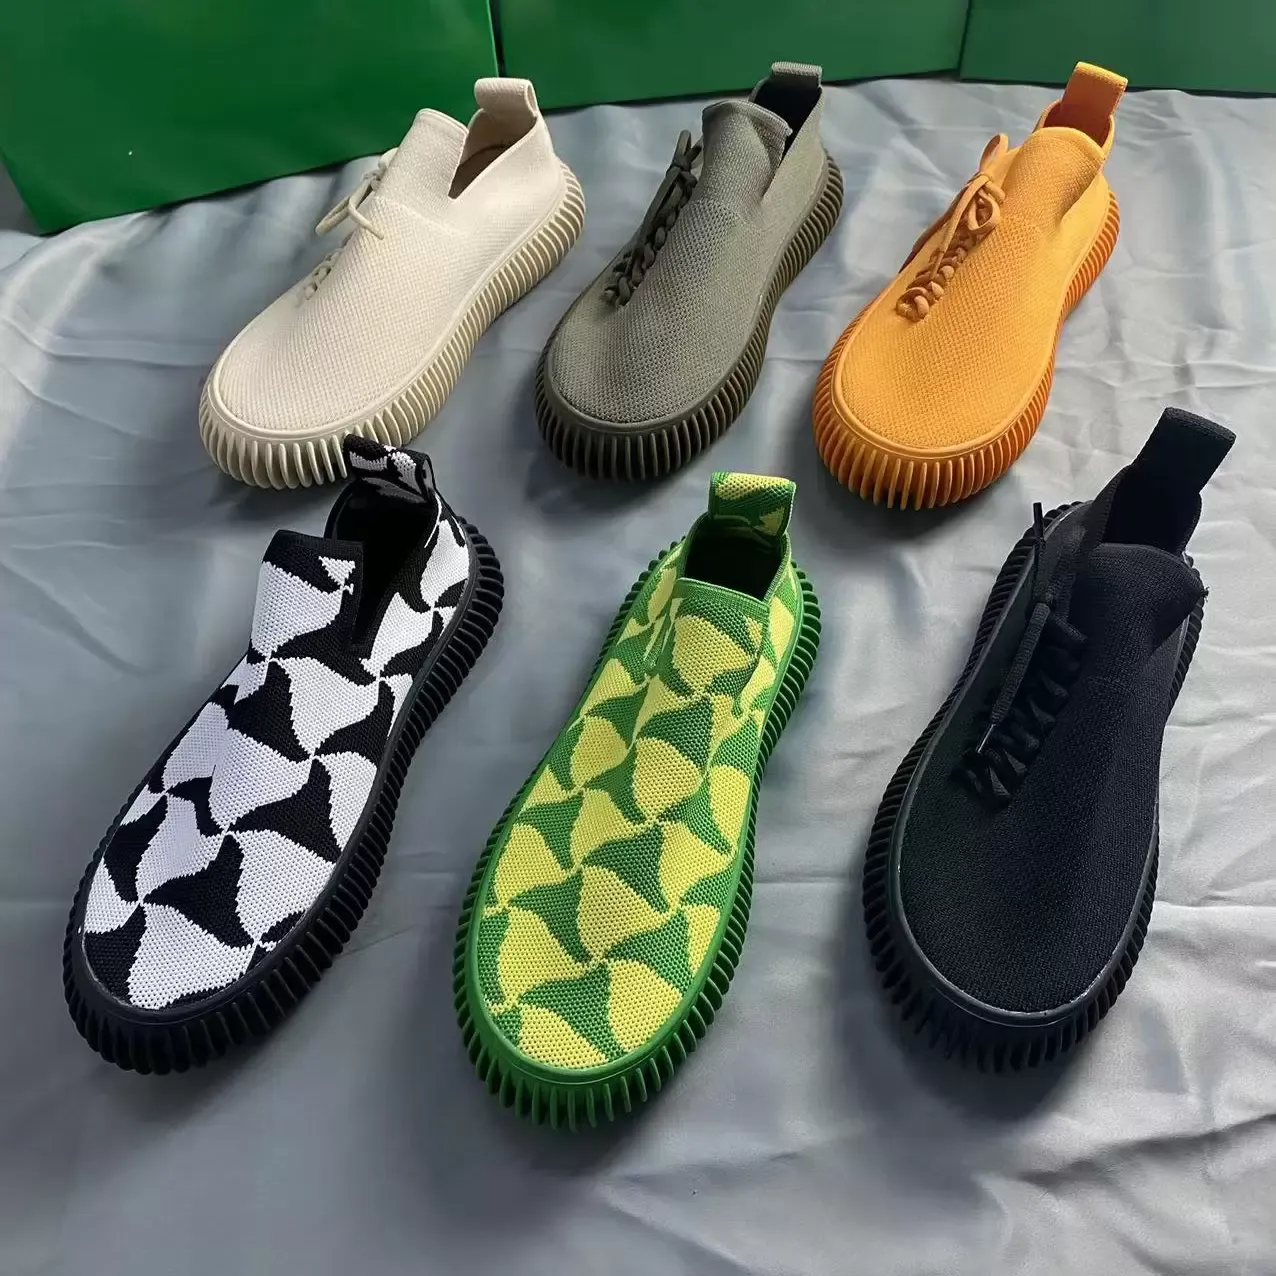 Ripple Sneakers nuevo estilo Diseñadores Zapatos de mujer piel de becerro gamuza y malla Raya Suela de goma Algodón elástico Low Top Hombre mostrar calidad 35-45